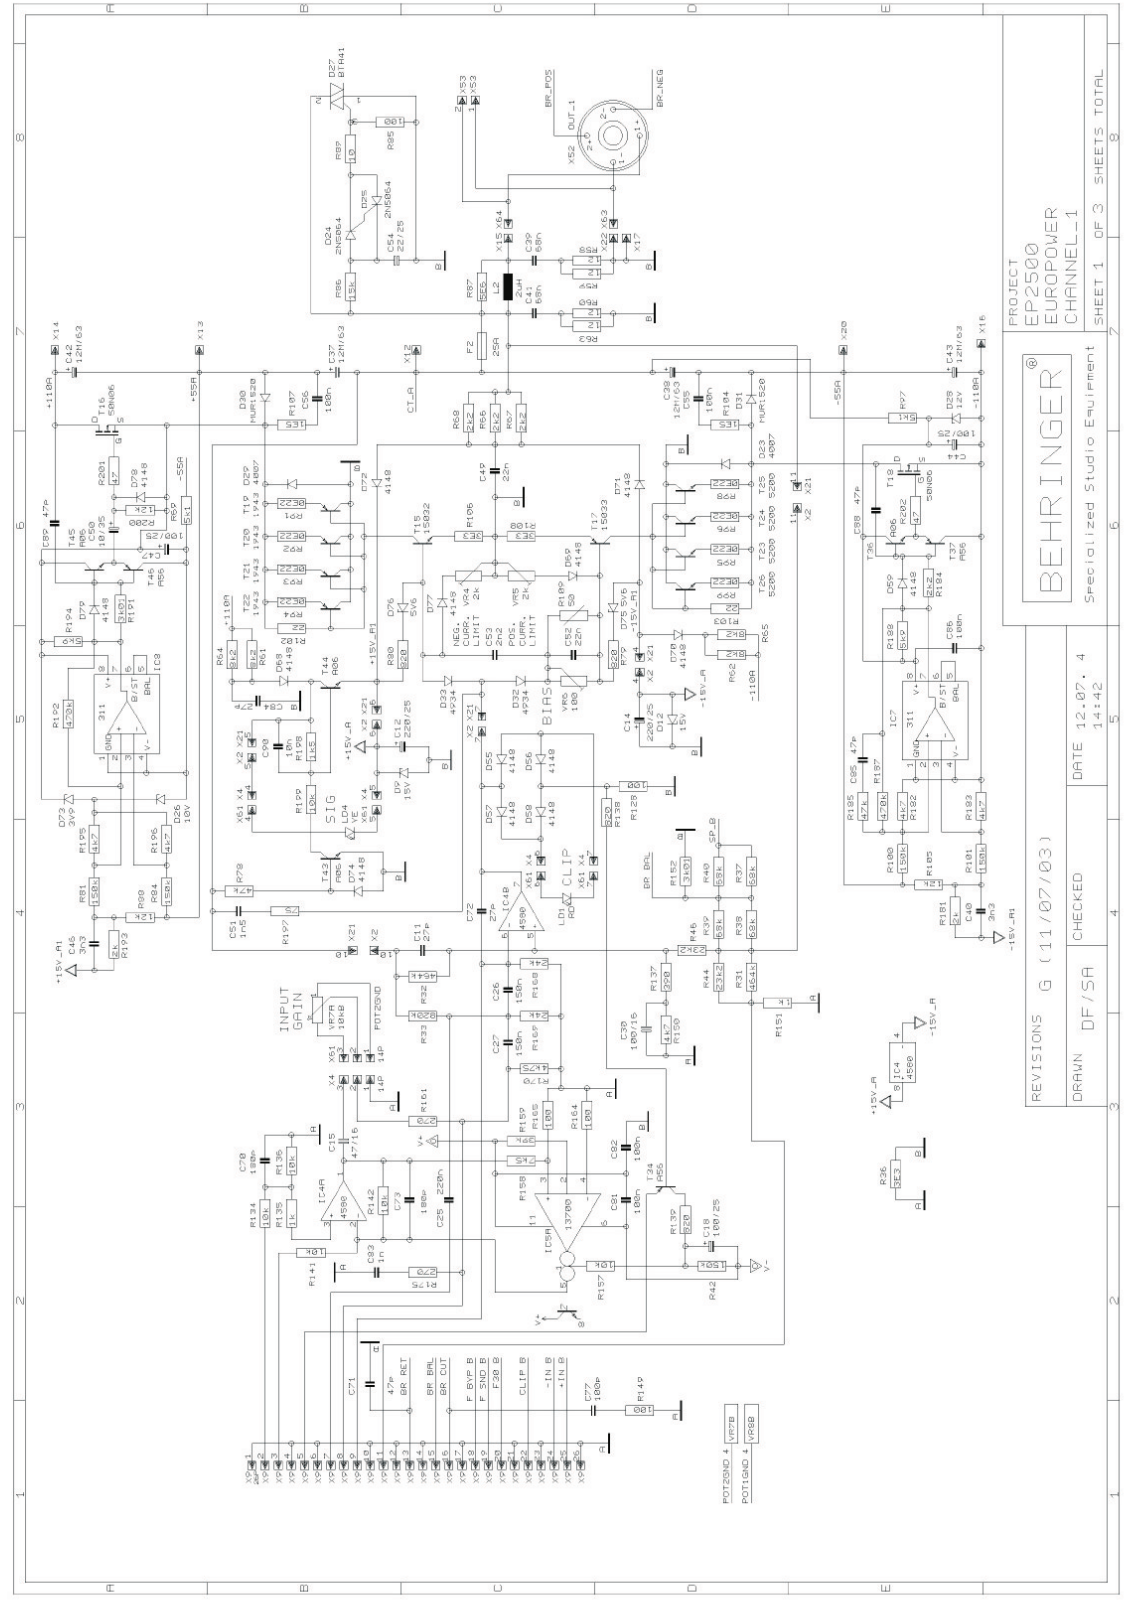 Behringer ep2500 schematic